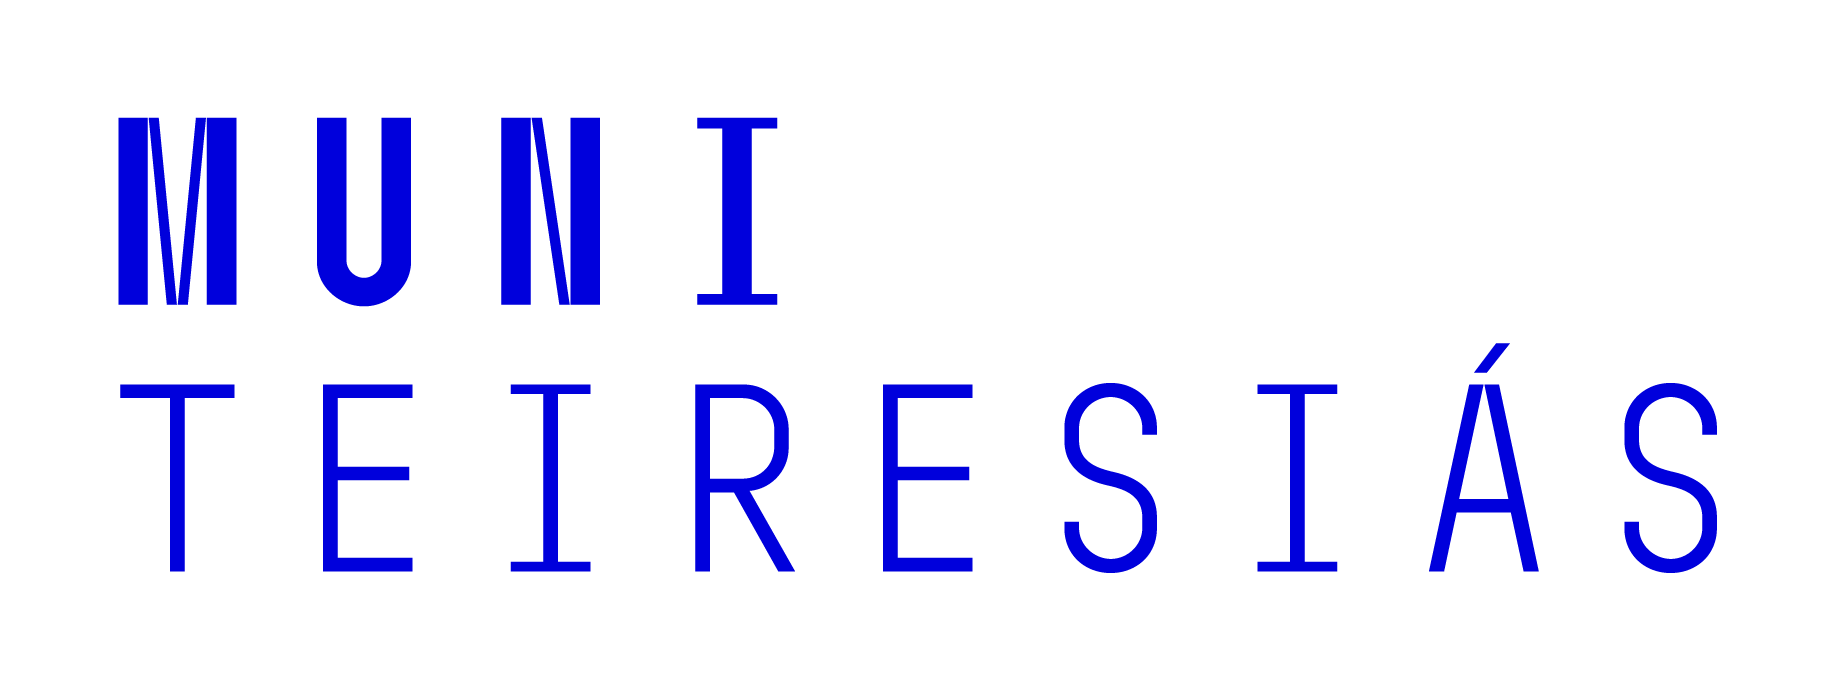 Logo Muni